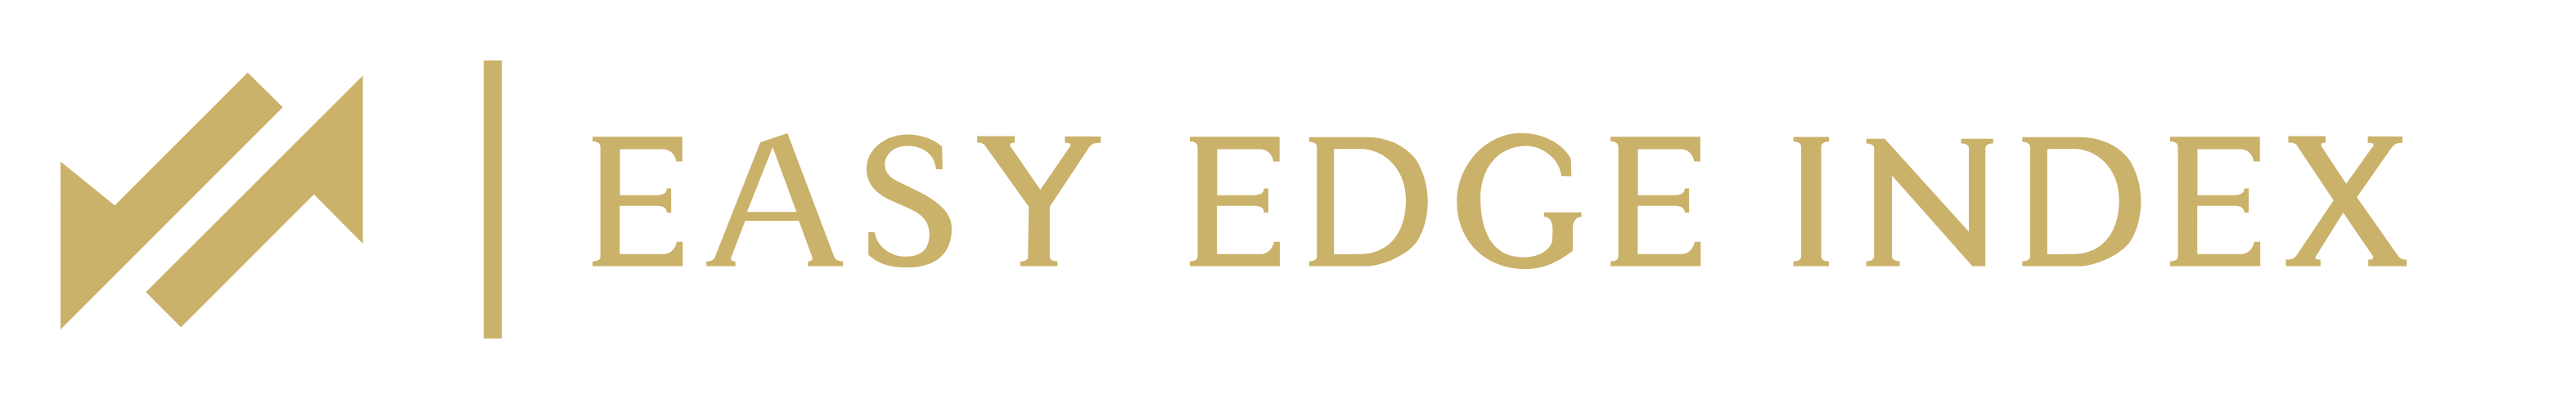 Easy Edge Index logo